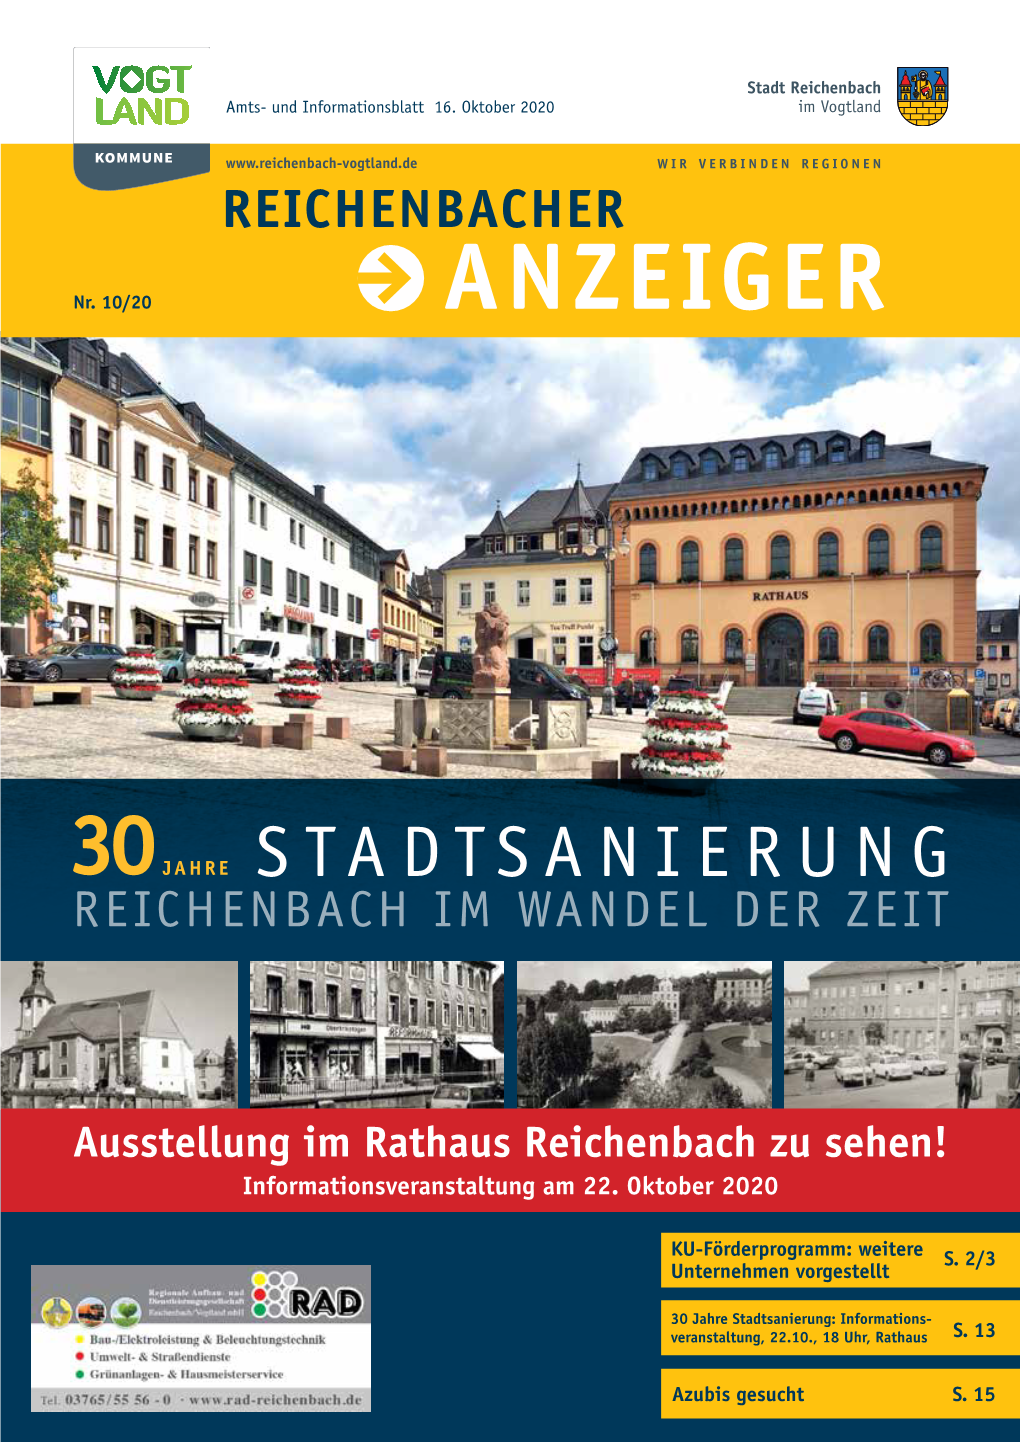 Ausstellung Im Rathaus Reichenbach Zu Sehen! Informationsveranstaltung Am 22